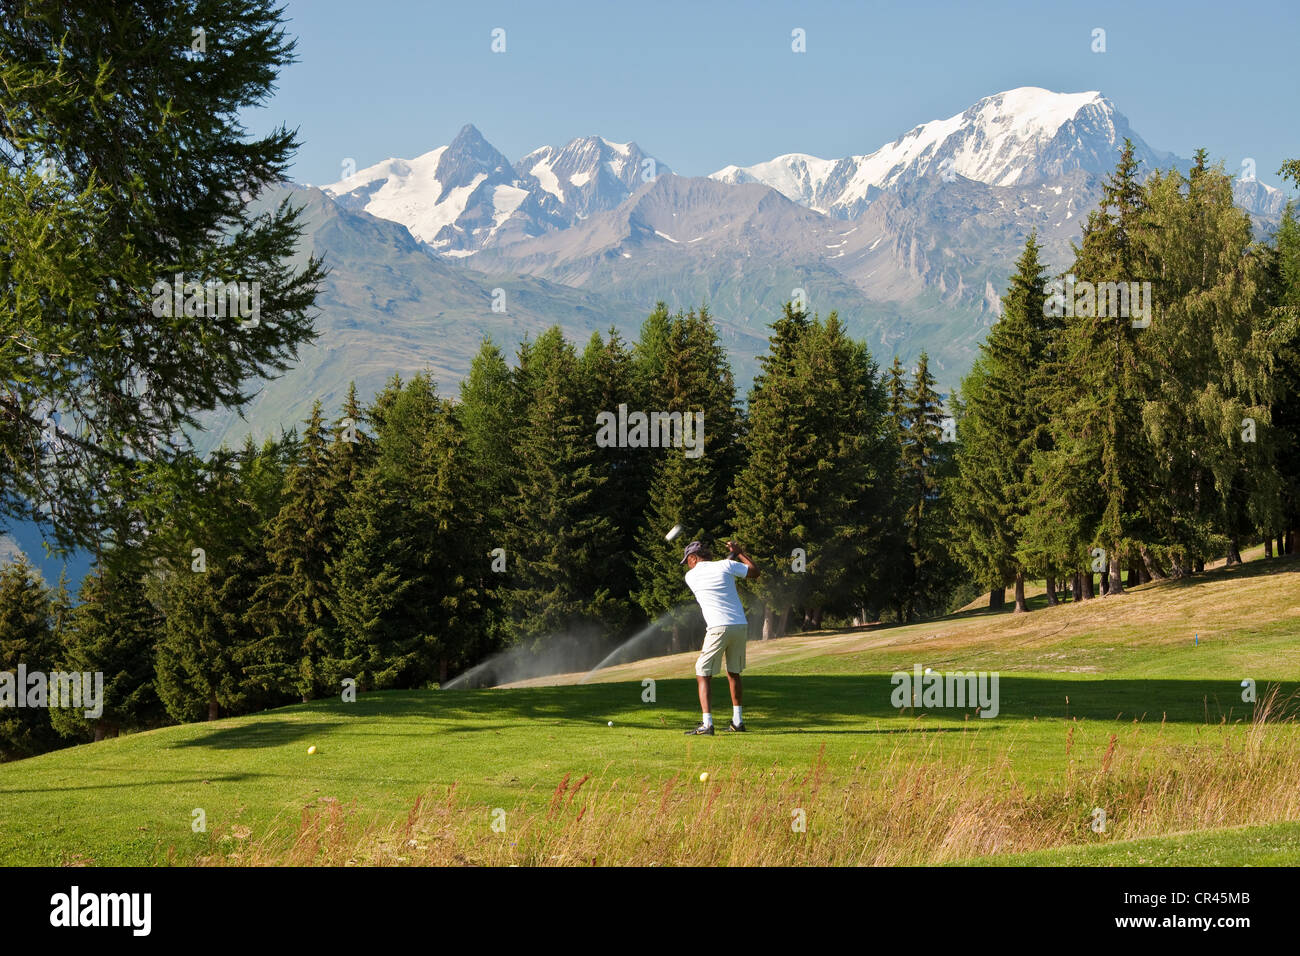 France, Savoie, Les Arcs 1800, the golf course facing Mont Blanc (4810m) Stock Photo